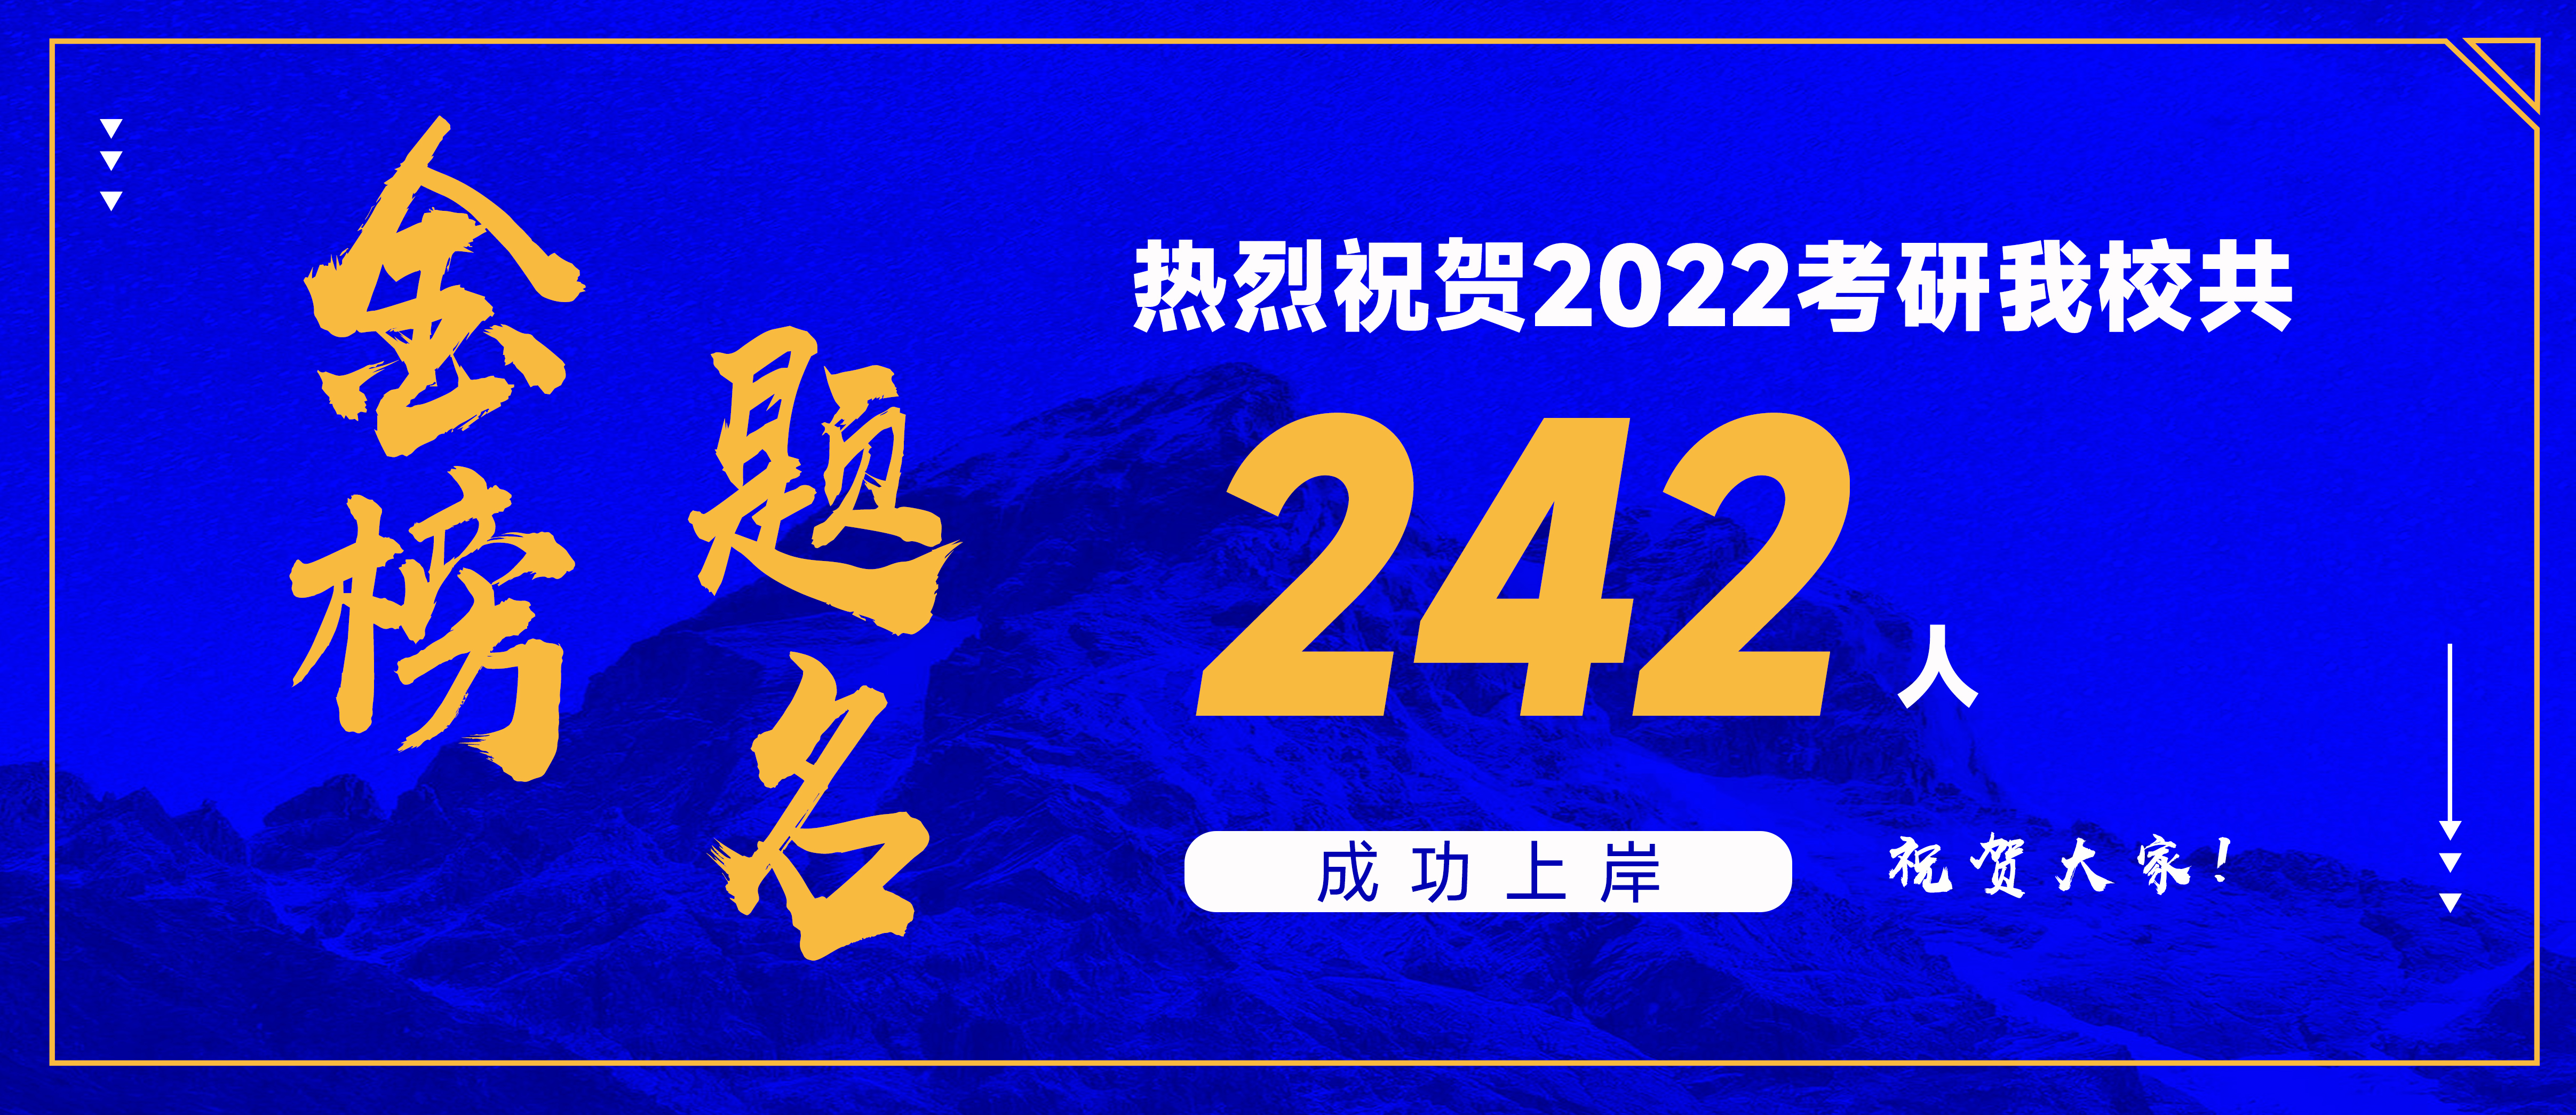 热烈祝贺夏博教育2022考研共242名学员被成功录取！